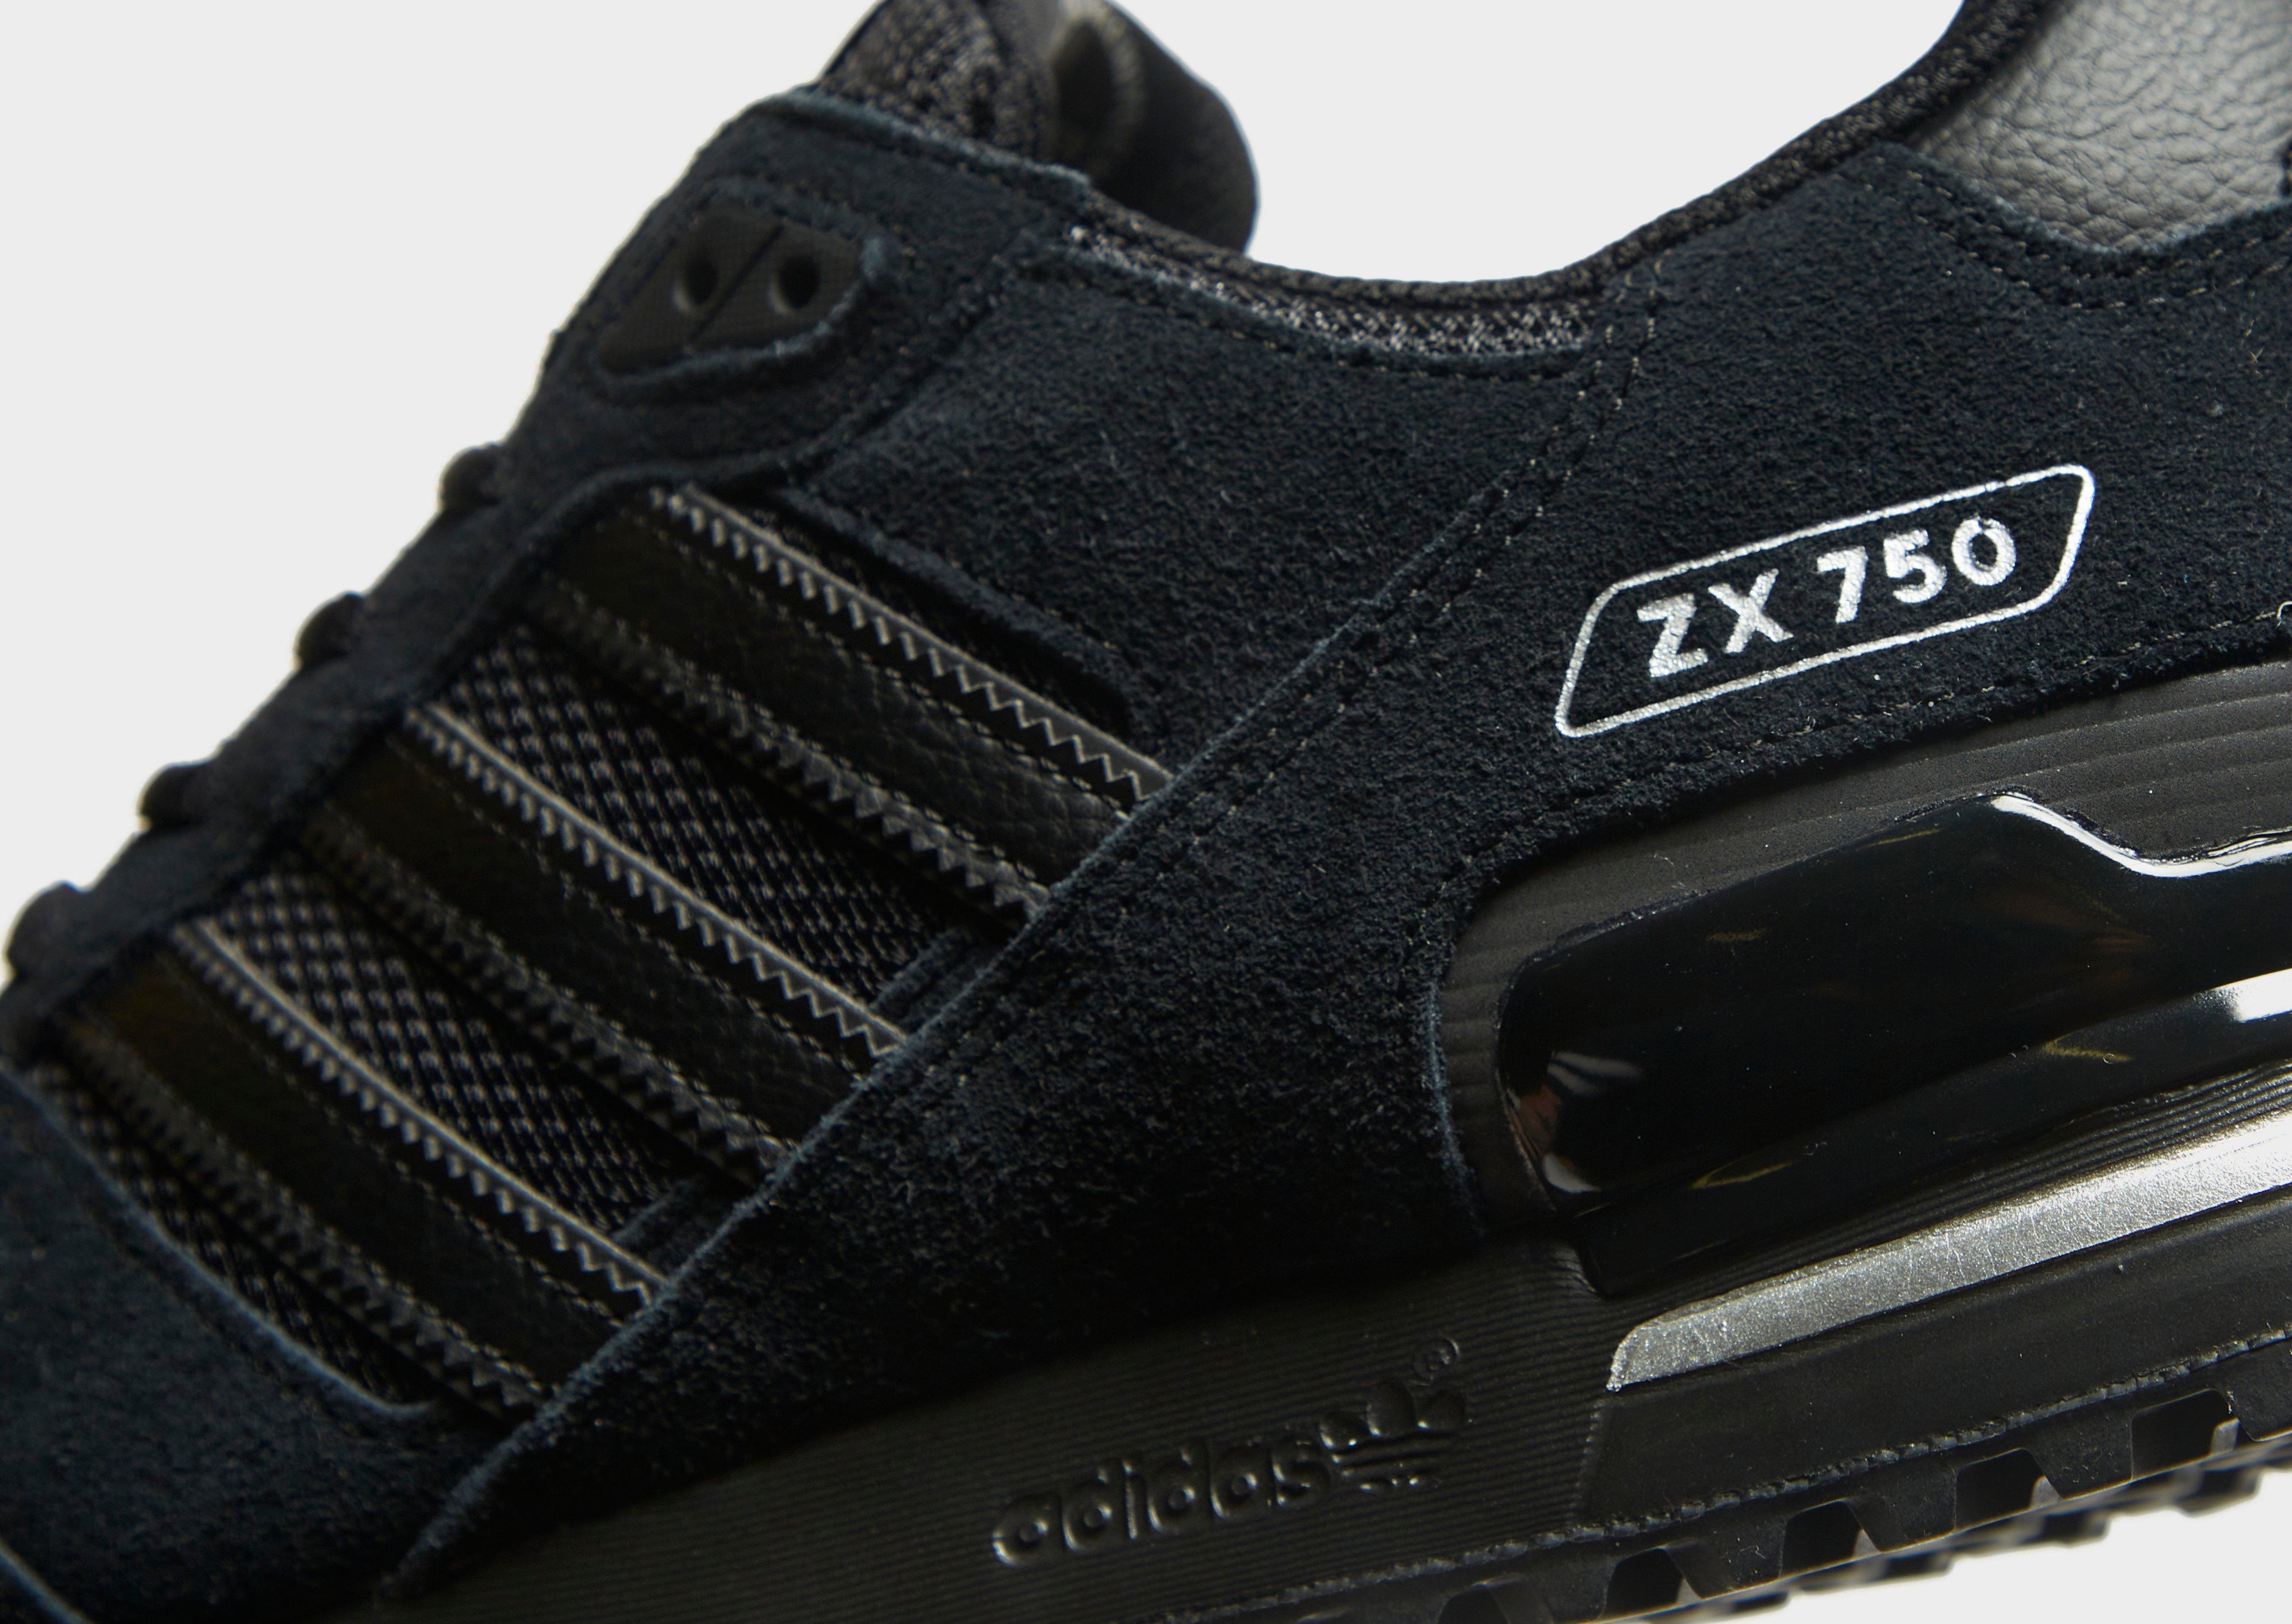 Adidas Originals ZX 750 | vlr.eng.br